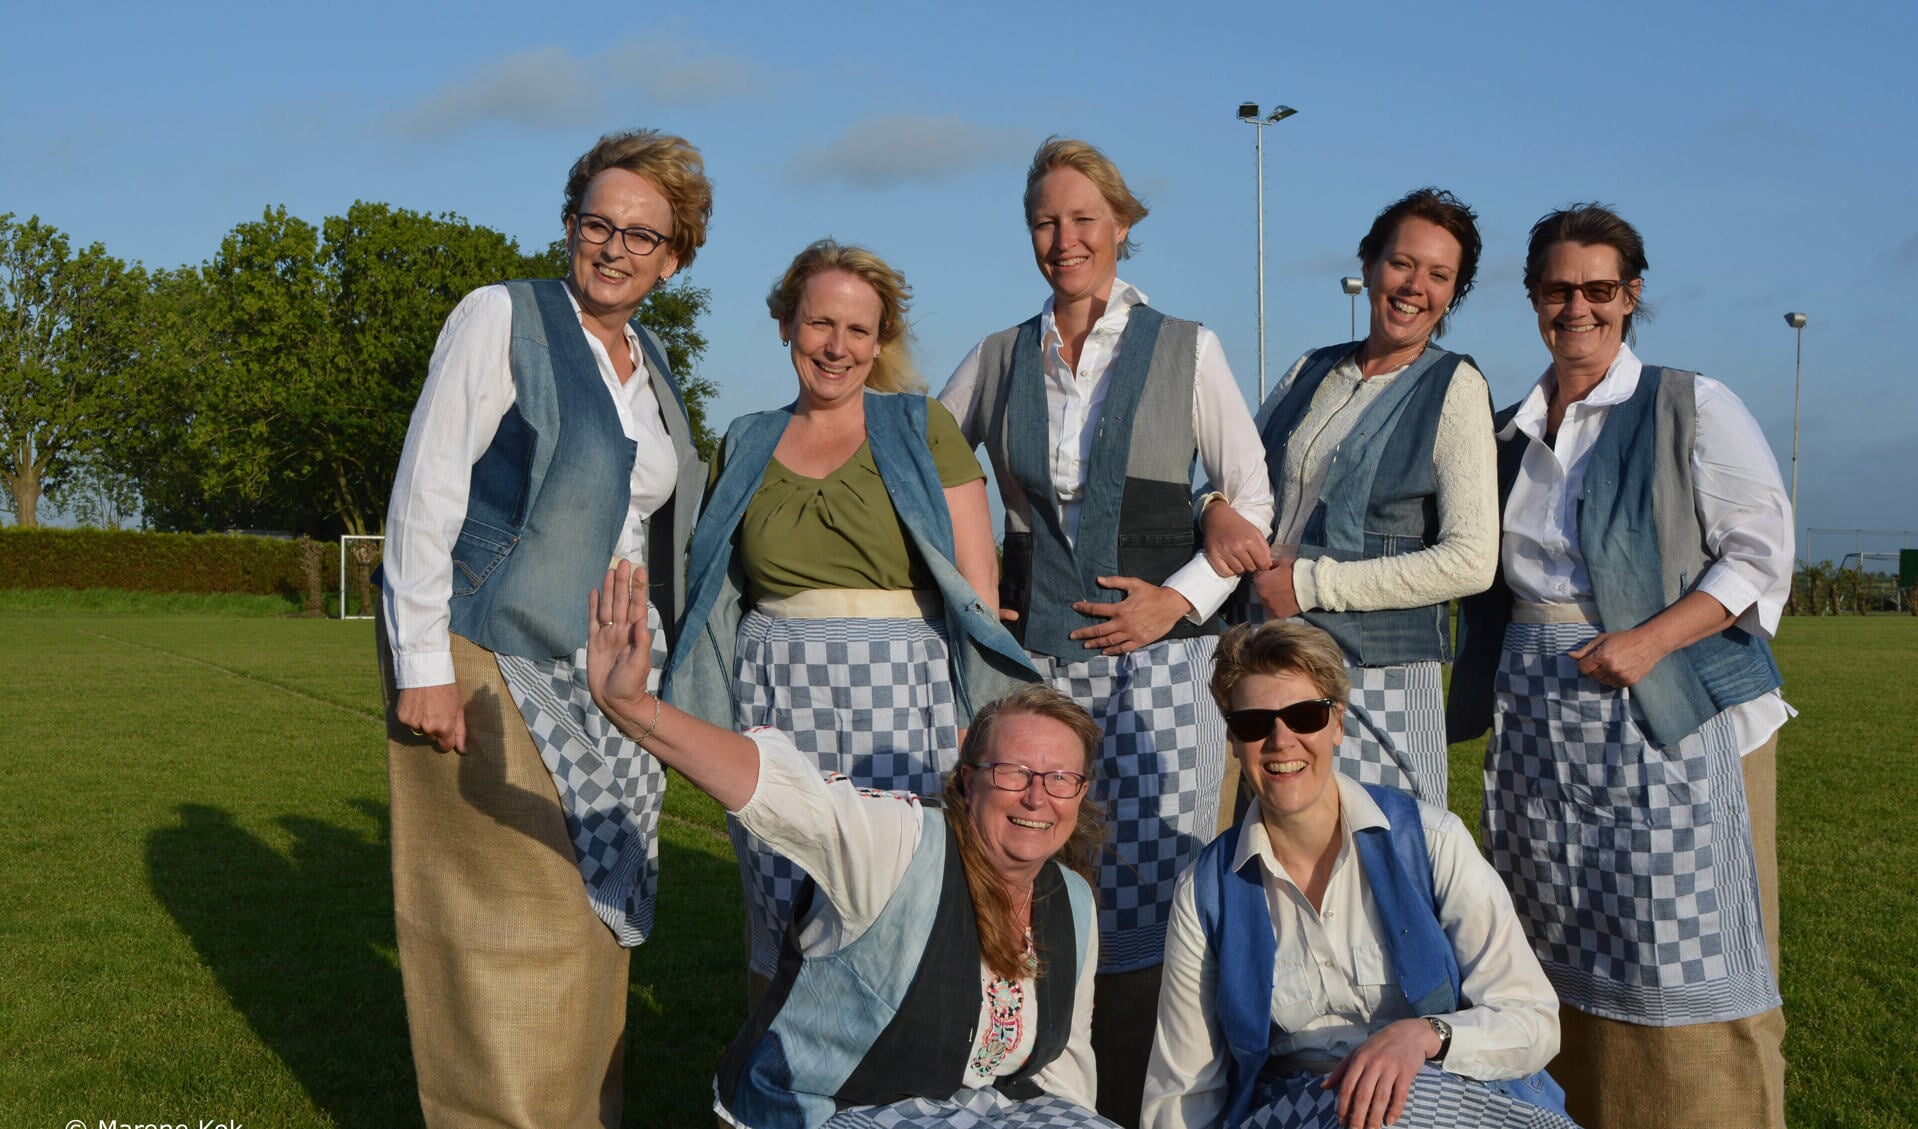 V.l.n.r.: Noorke, Miriam, Elise, Ilse en Lucia en hurkend, v.l.n.r.: Ineke en Annemieke. (Foto: Marene Kok)